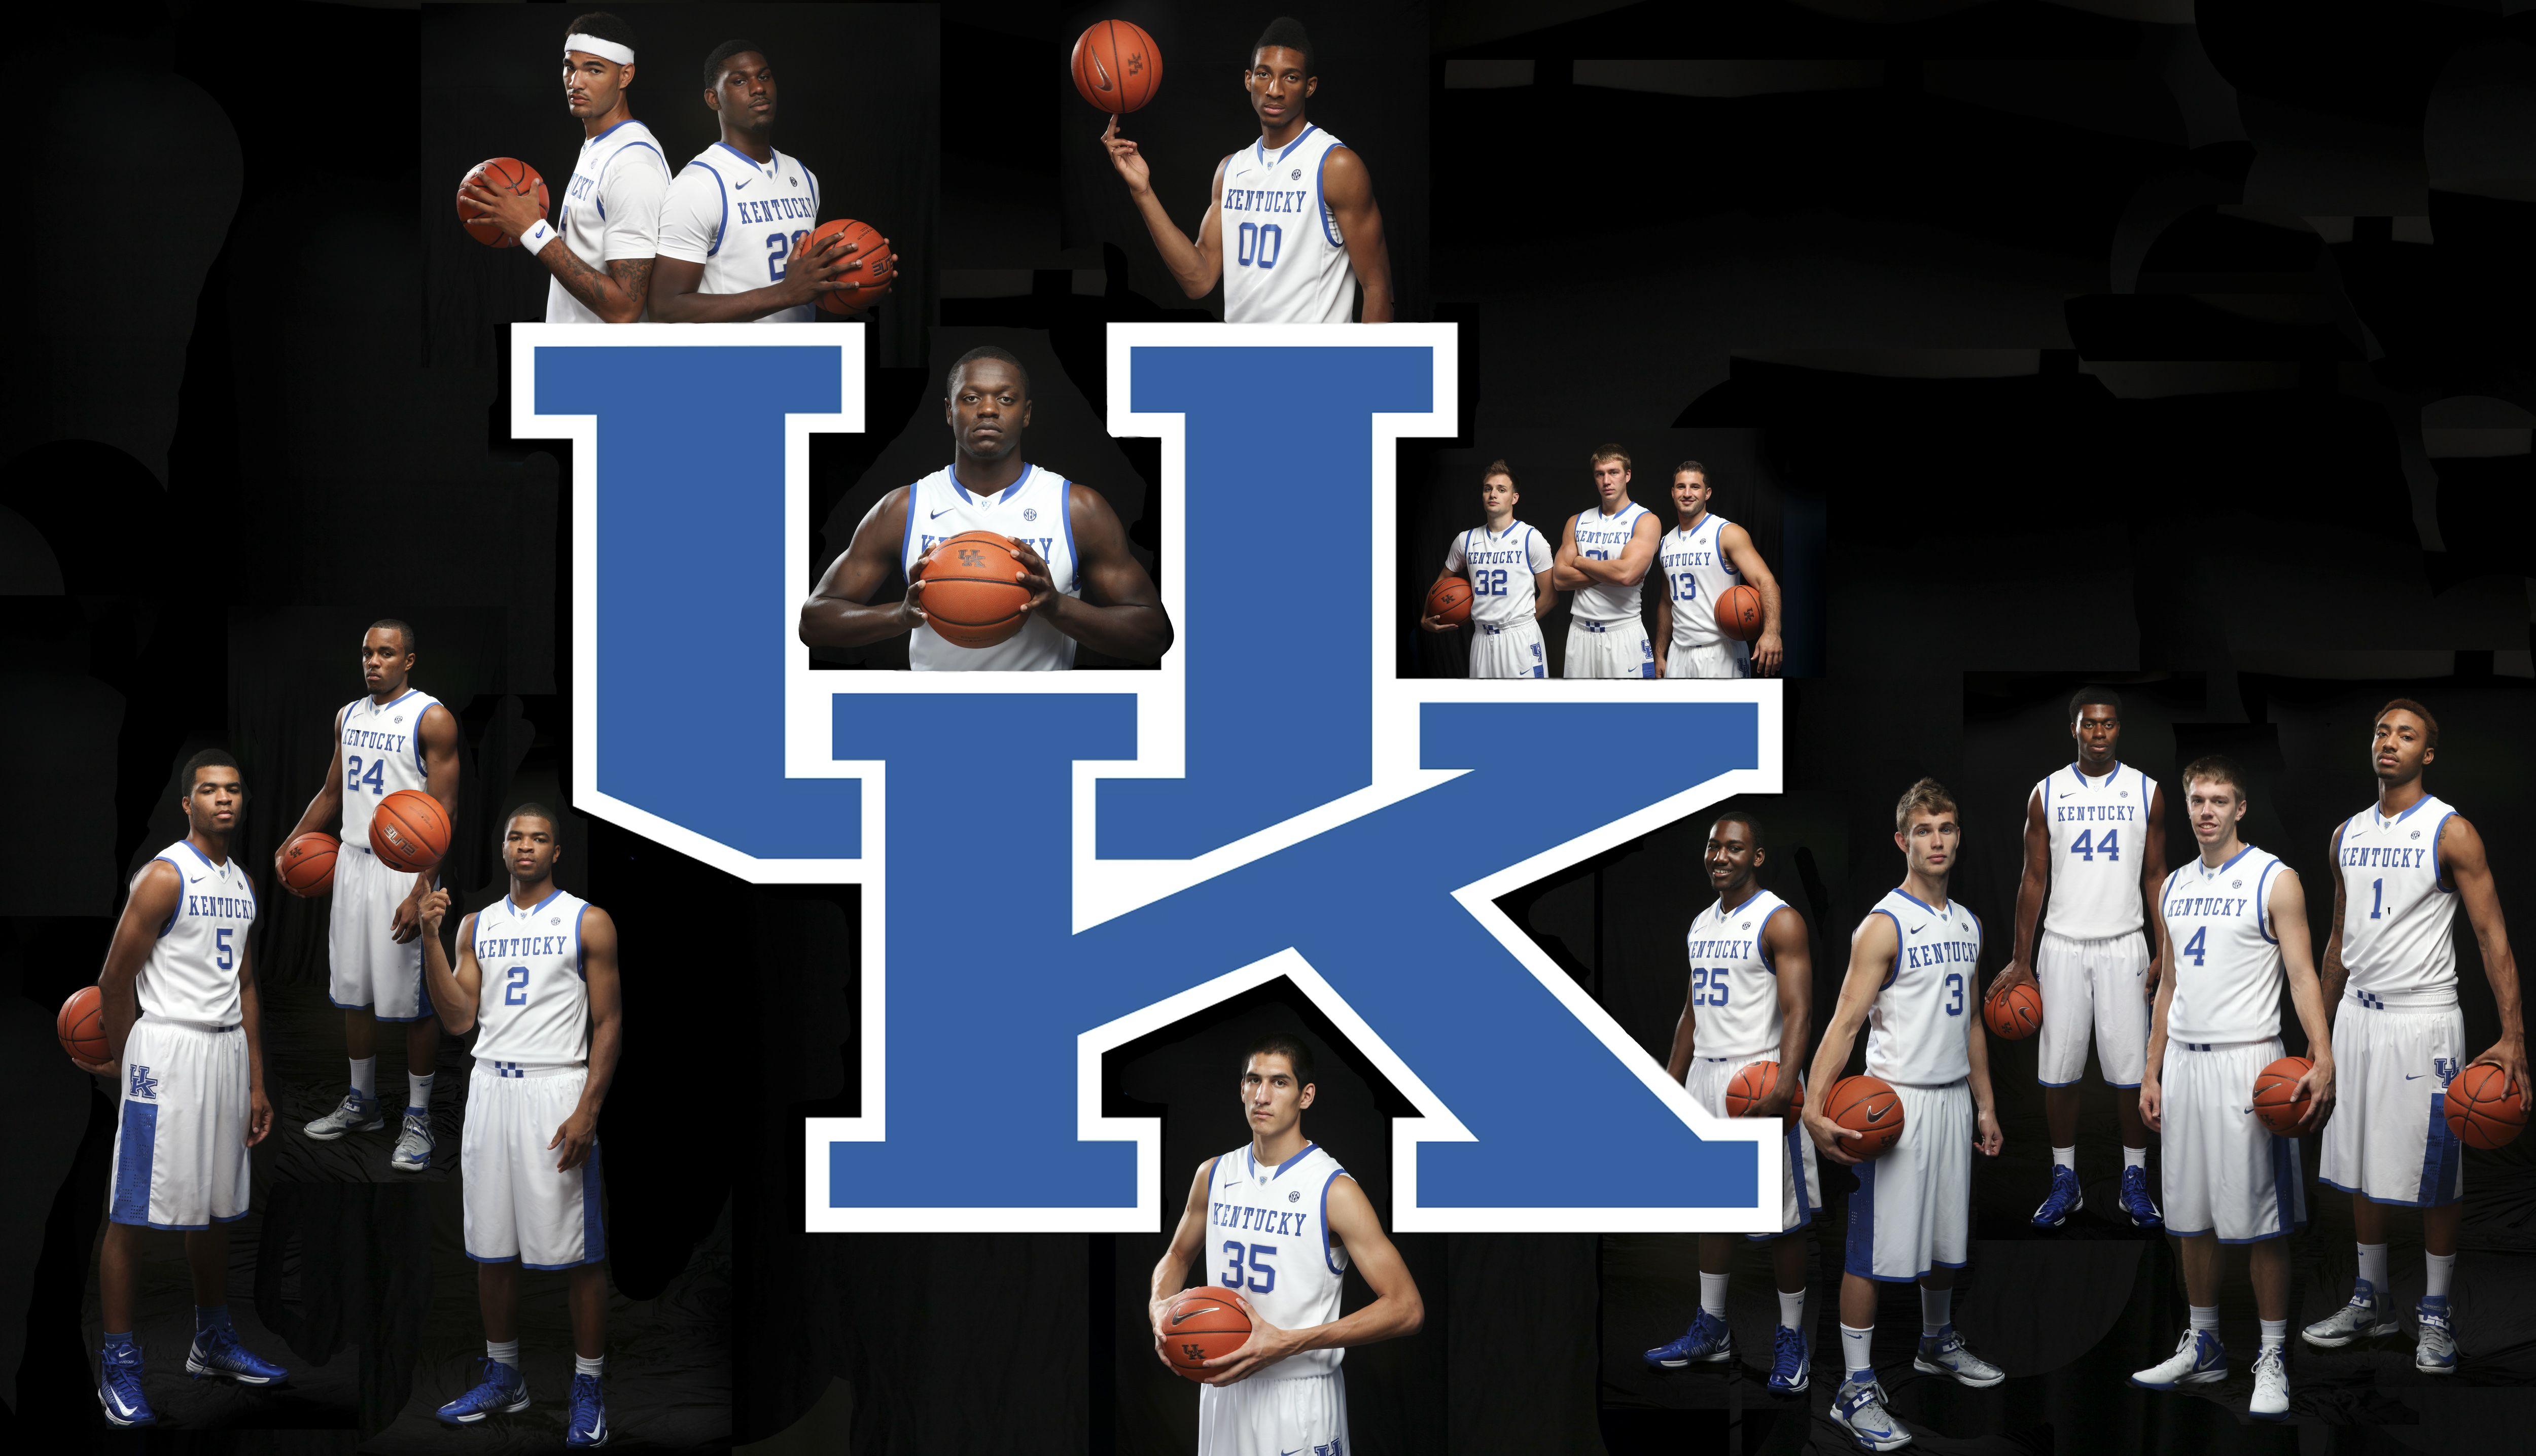 Download Wallpaper Kentucky basketball, Kentucky wildcats vs notre